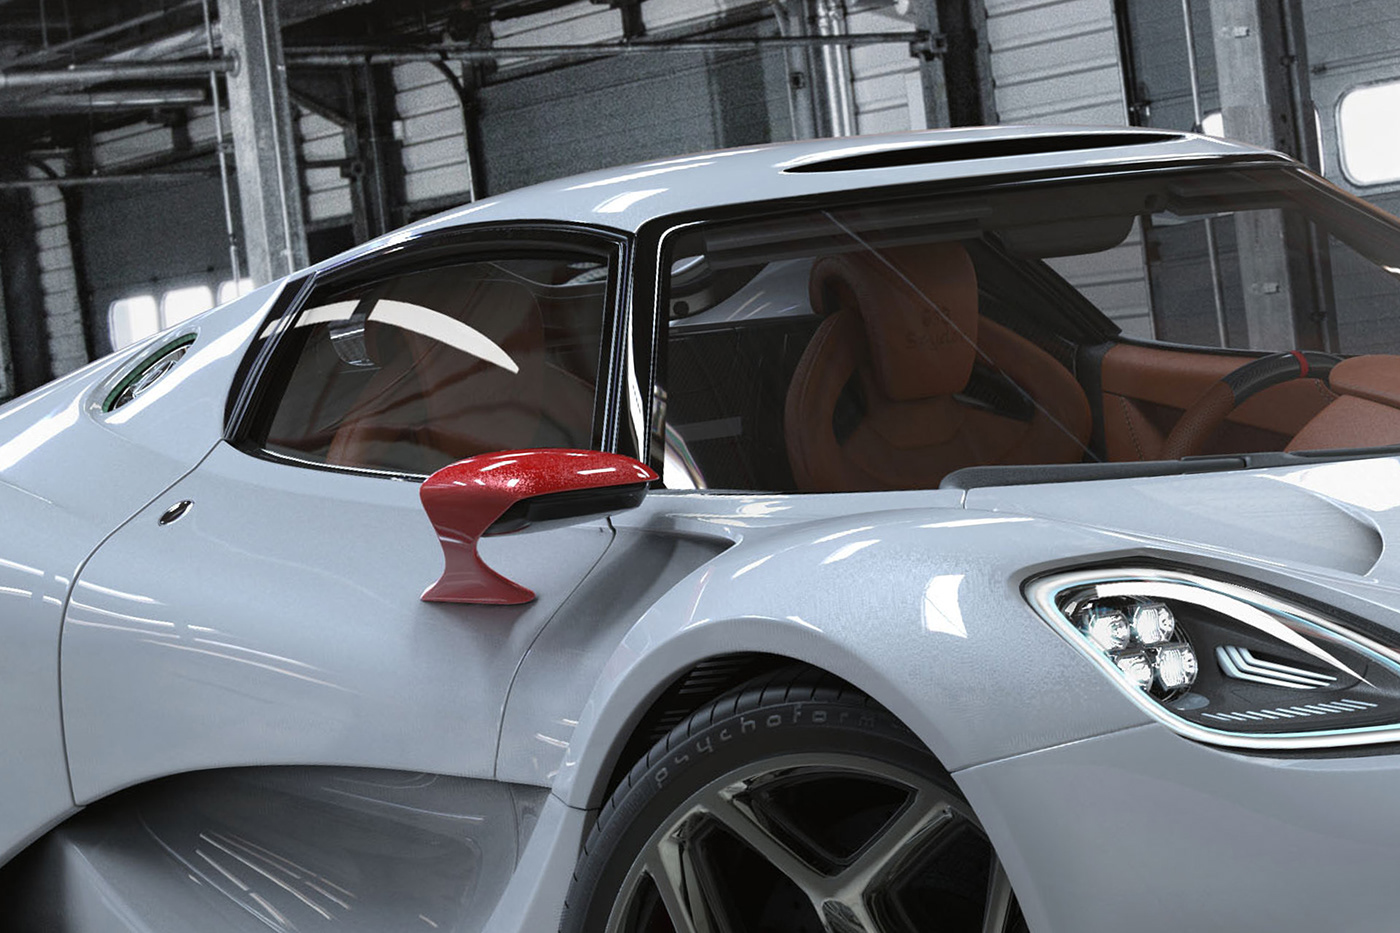 porsche 913 concept Porsche psychoform 3D CGI Automotive design